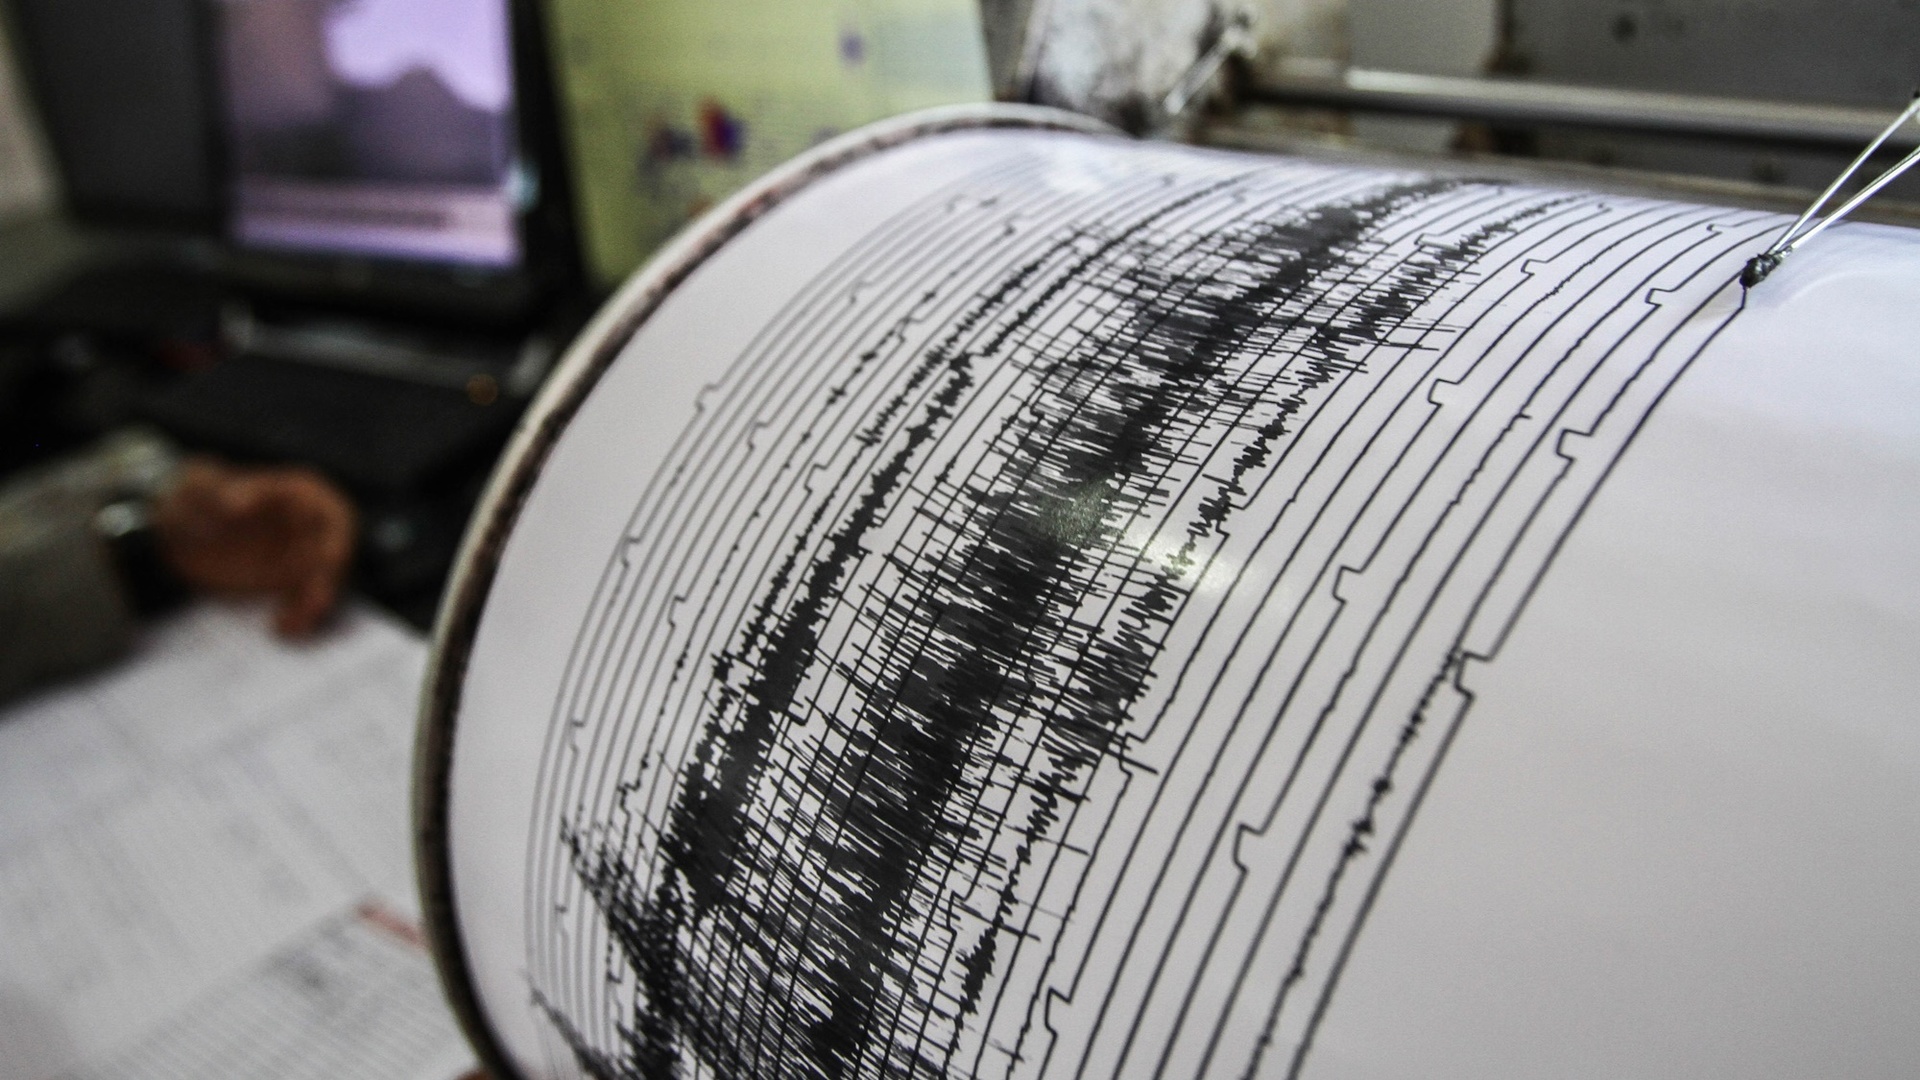 Volvió a temblar, reportan sismo de magnitud 4.6 en el país